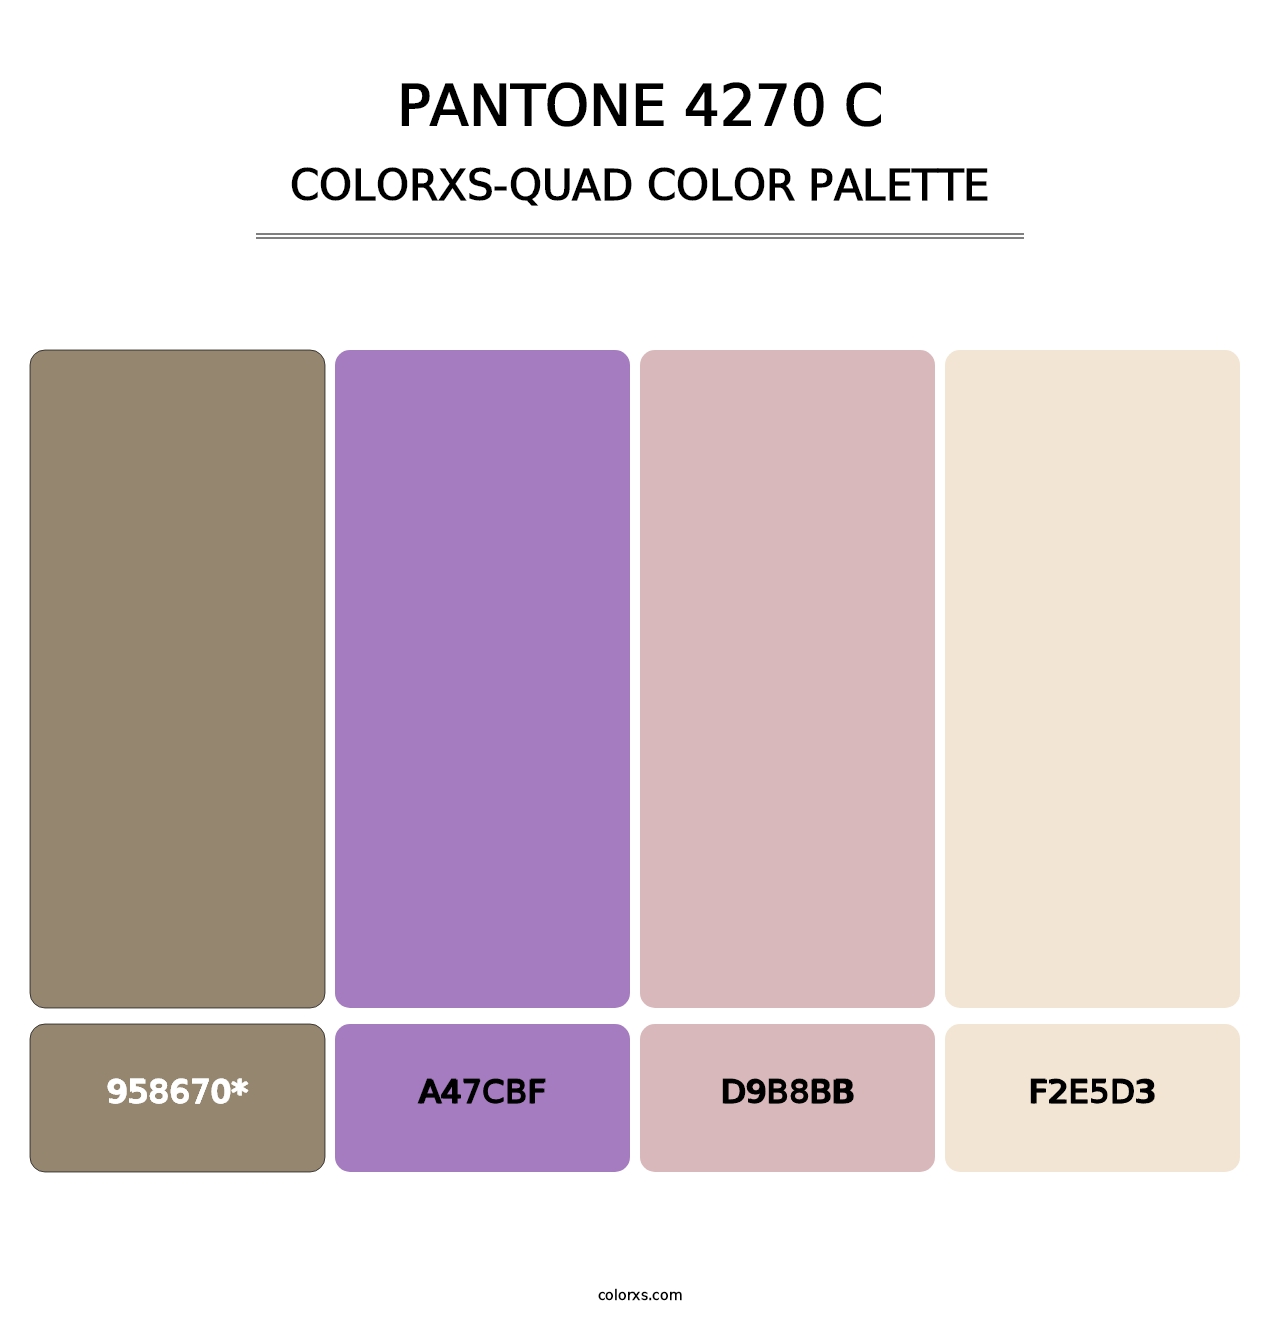 PANTONE 4270 C - Colorxs Quad Palette